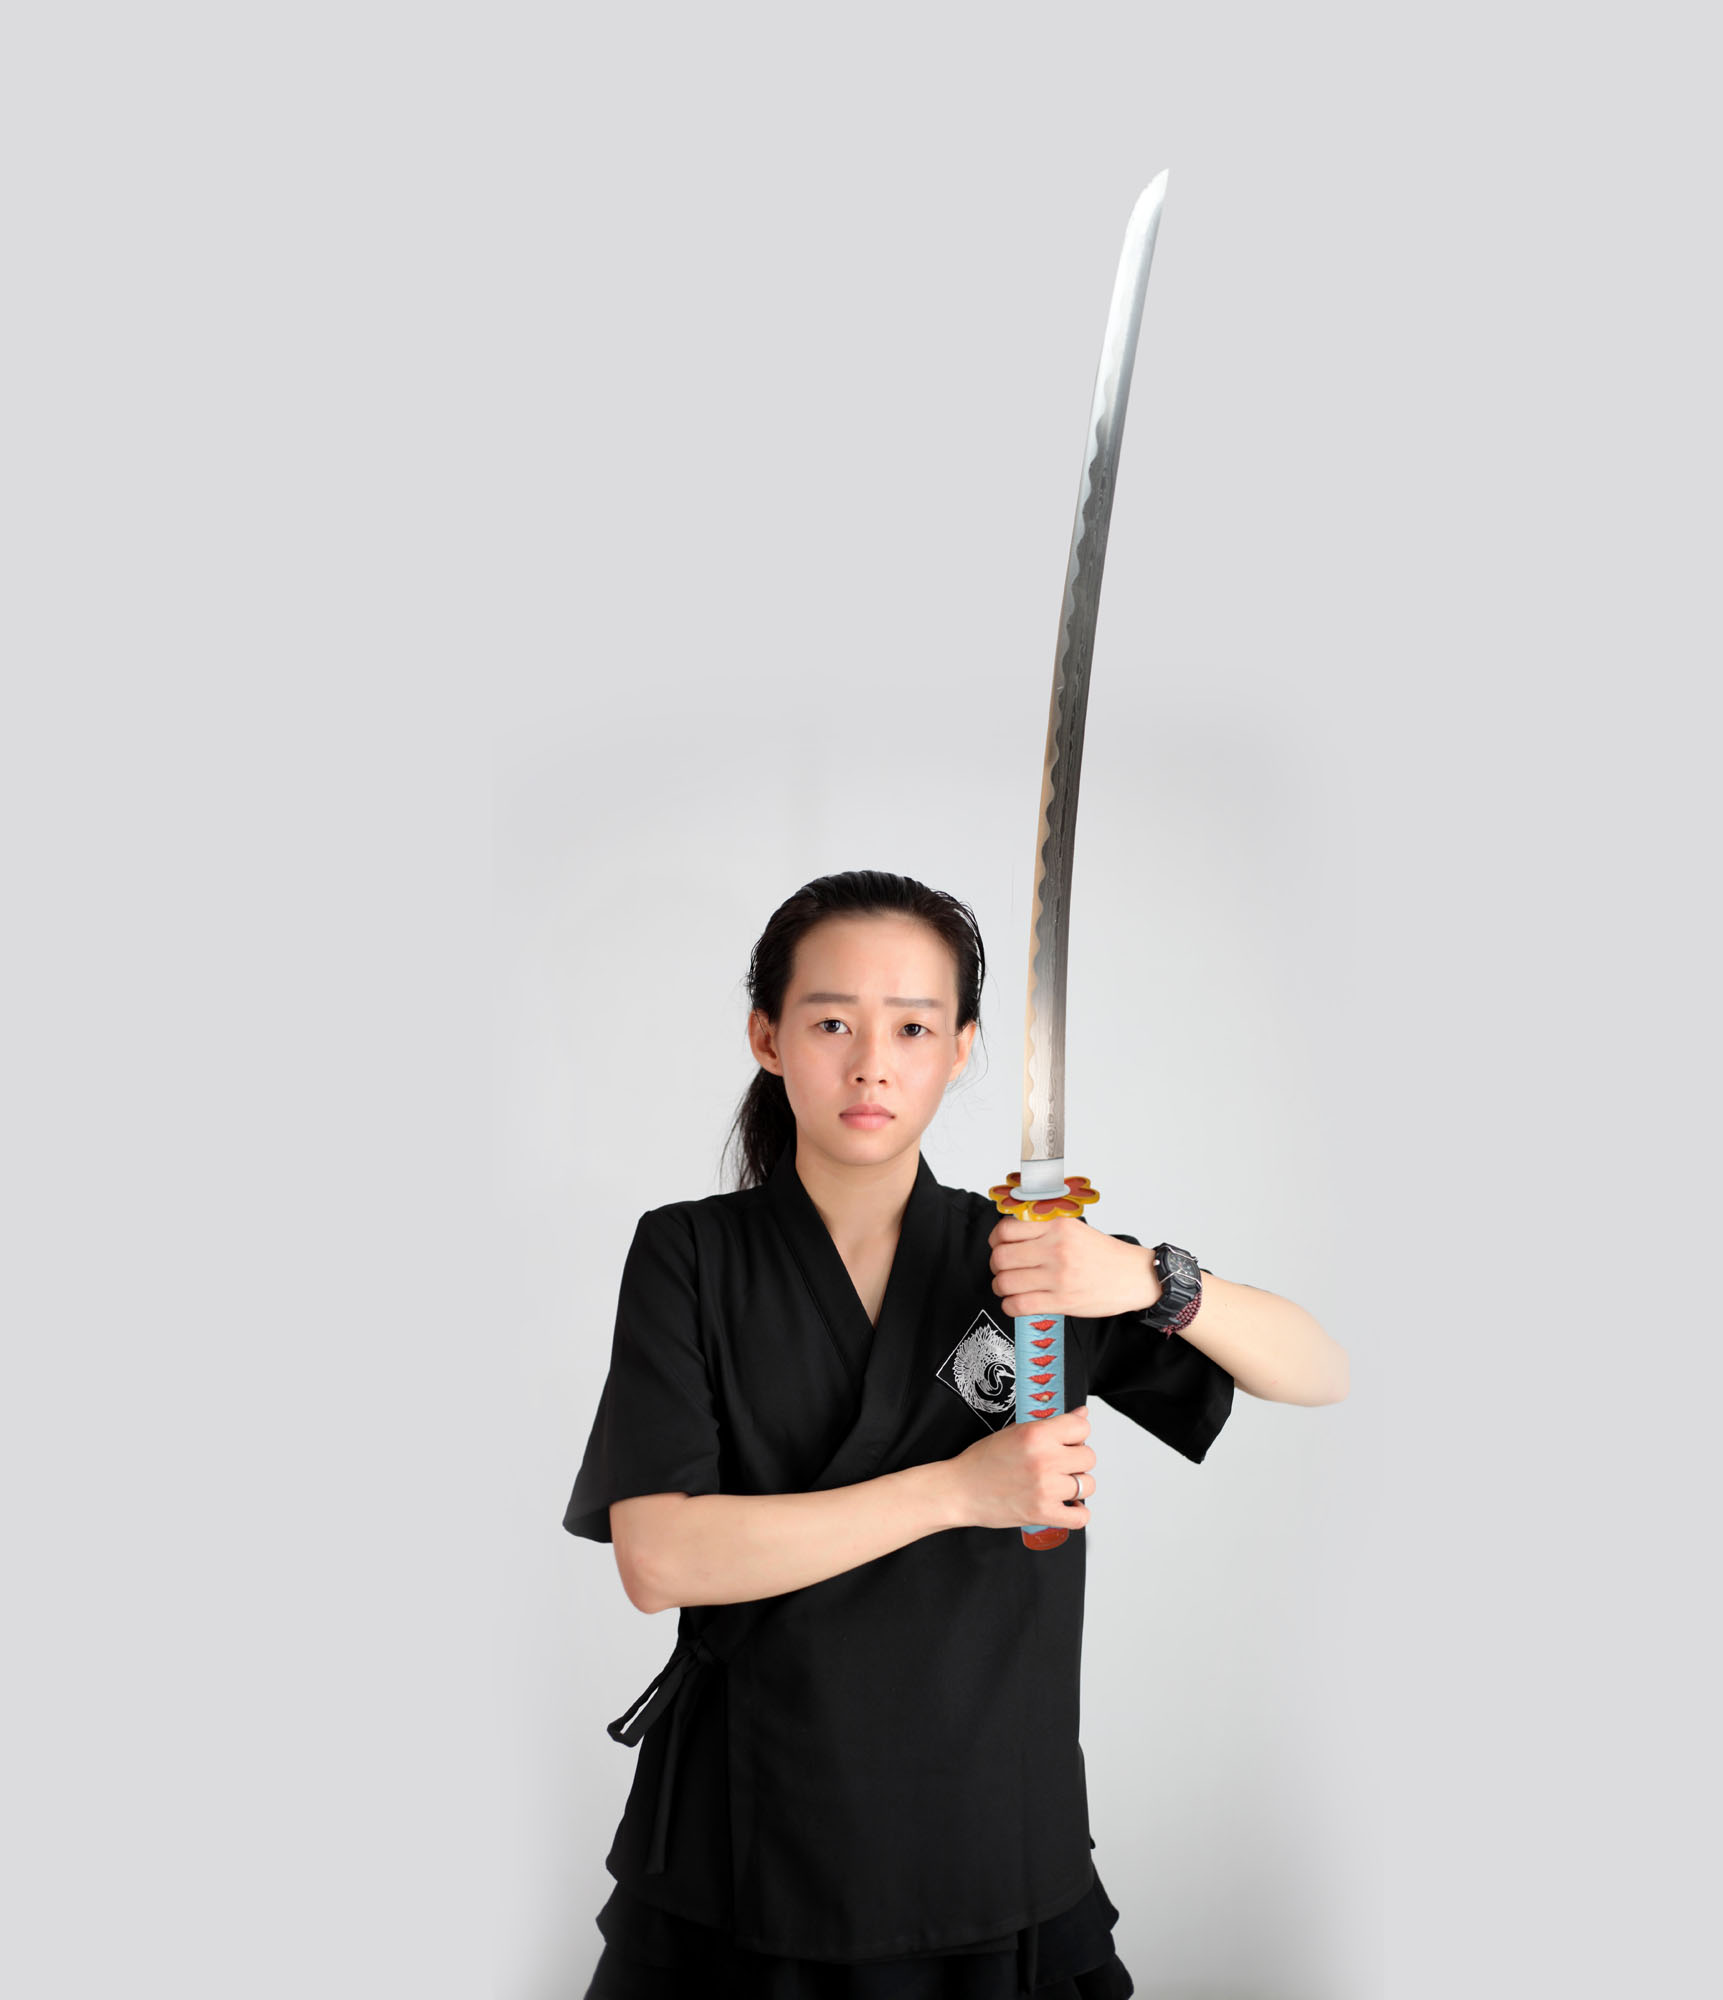 Demon Slayer: Kimetsu no Yaiba - Kanroji Mitsuri Schwert - handgeschmiedet und gefaltet, Set